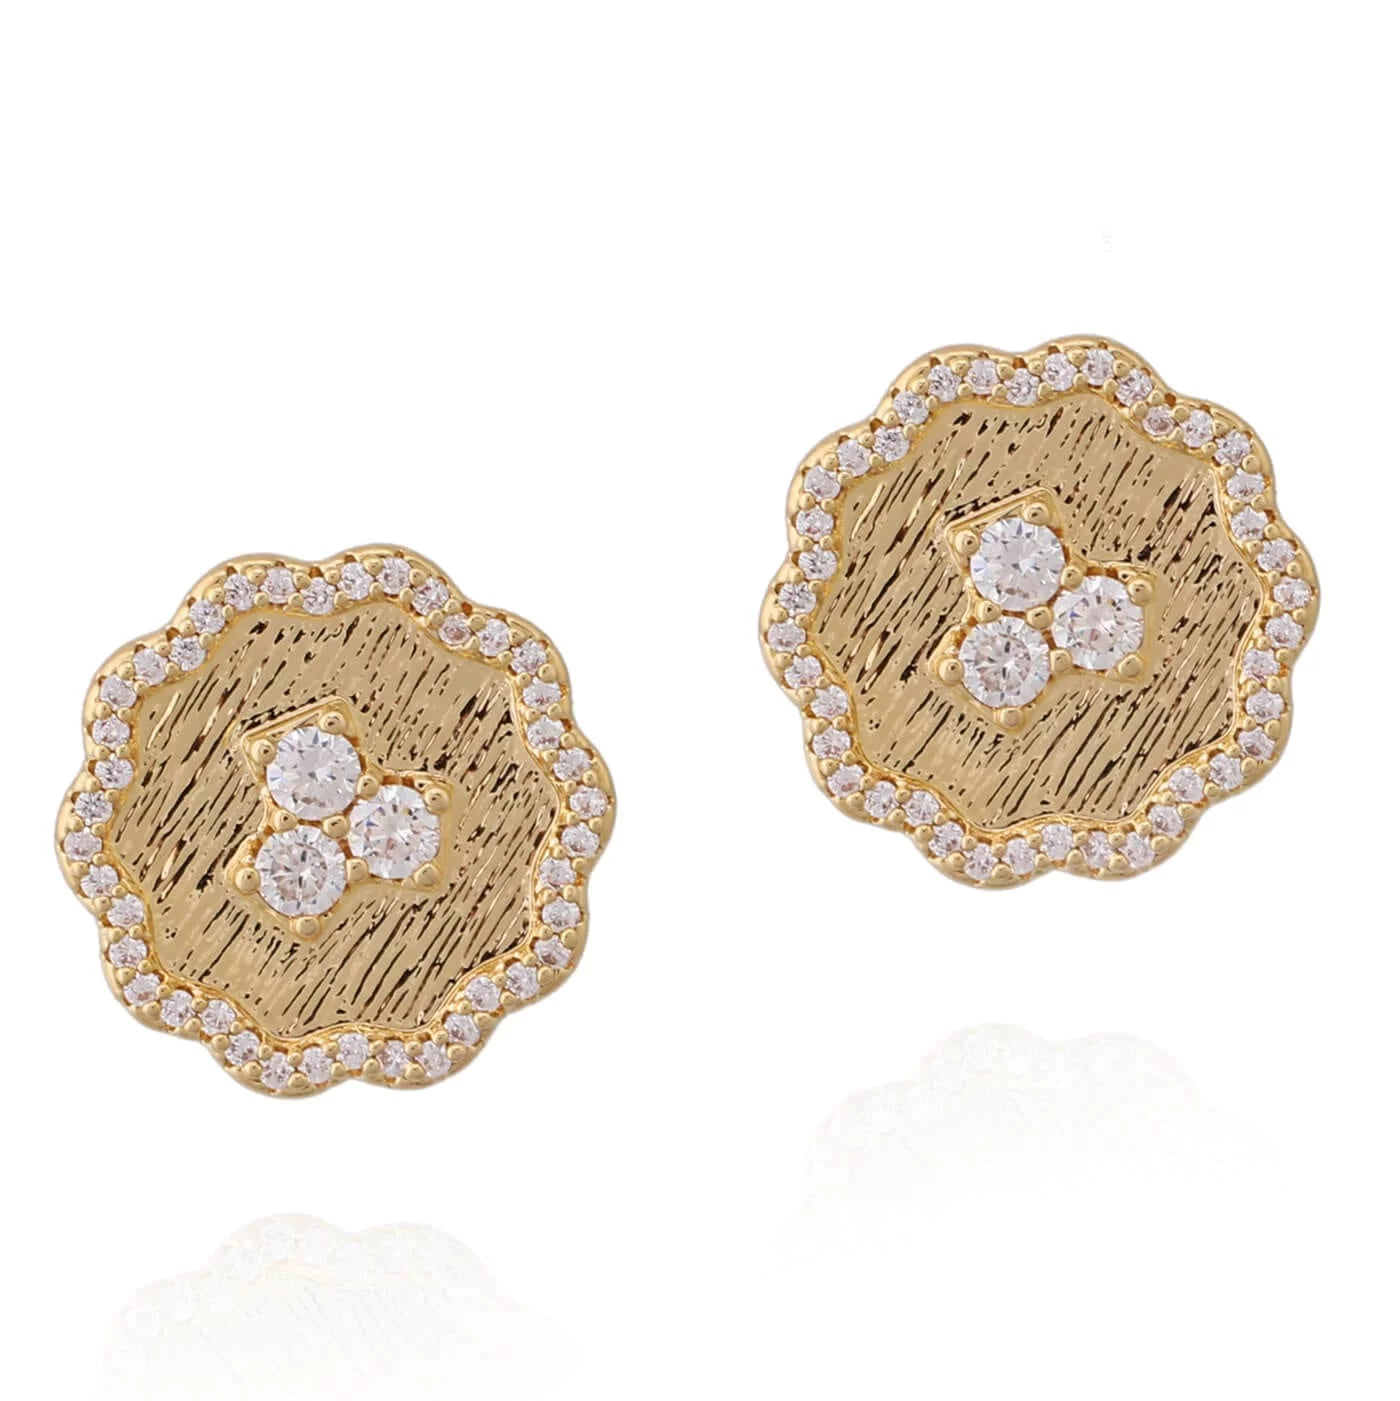 Wavy Flower Brushed Gold Stud Earring - HK Jewels